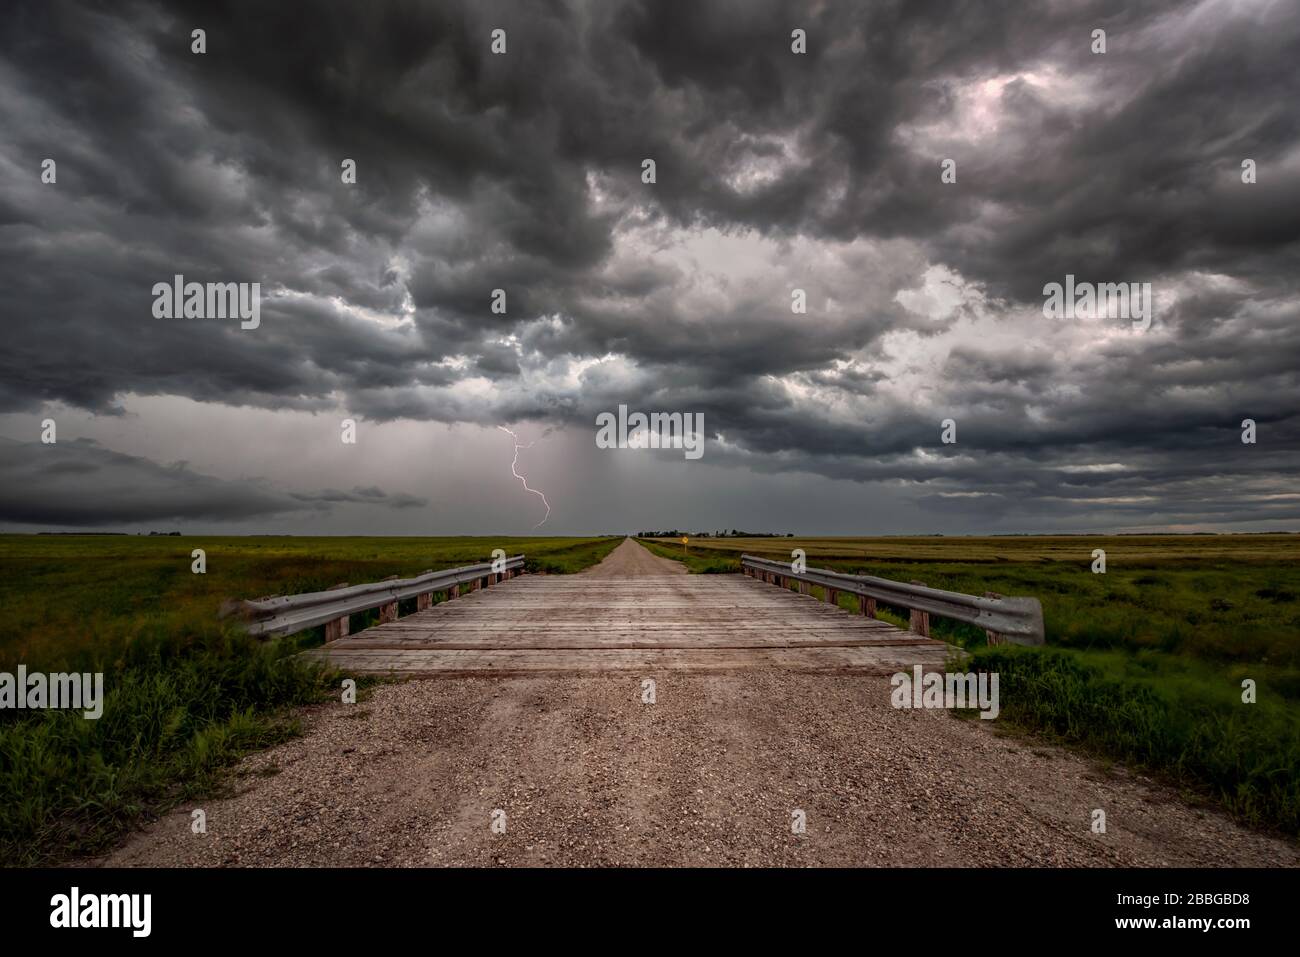 Sturm mit Blitzschlag über alte Landbrücke auf Schotterstraße im ländlichen Süden Manitobas Kanadas Stockfoto